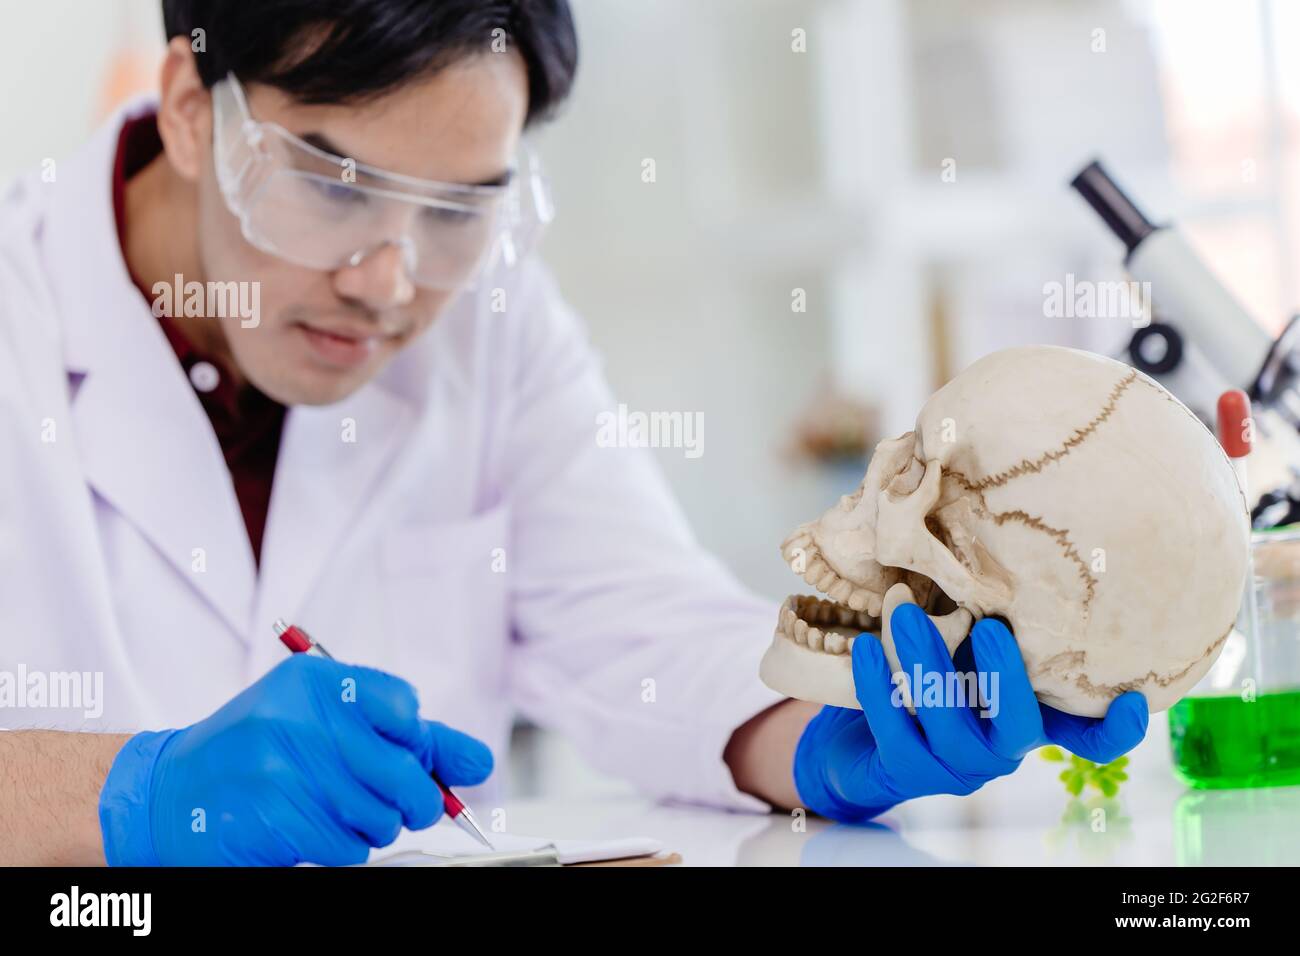 Asiatique Homme travaillant en Physical Scientist et Anthropologie en biologie étude de recherche en laboratoire sur les os et le crâne humains. Banque D'Images